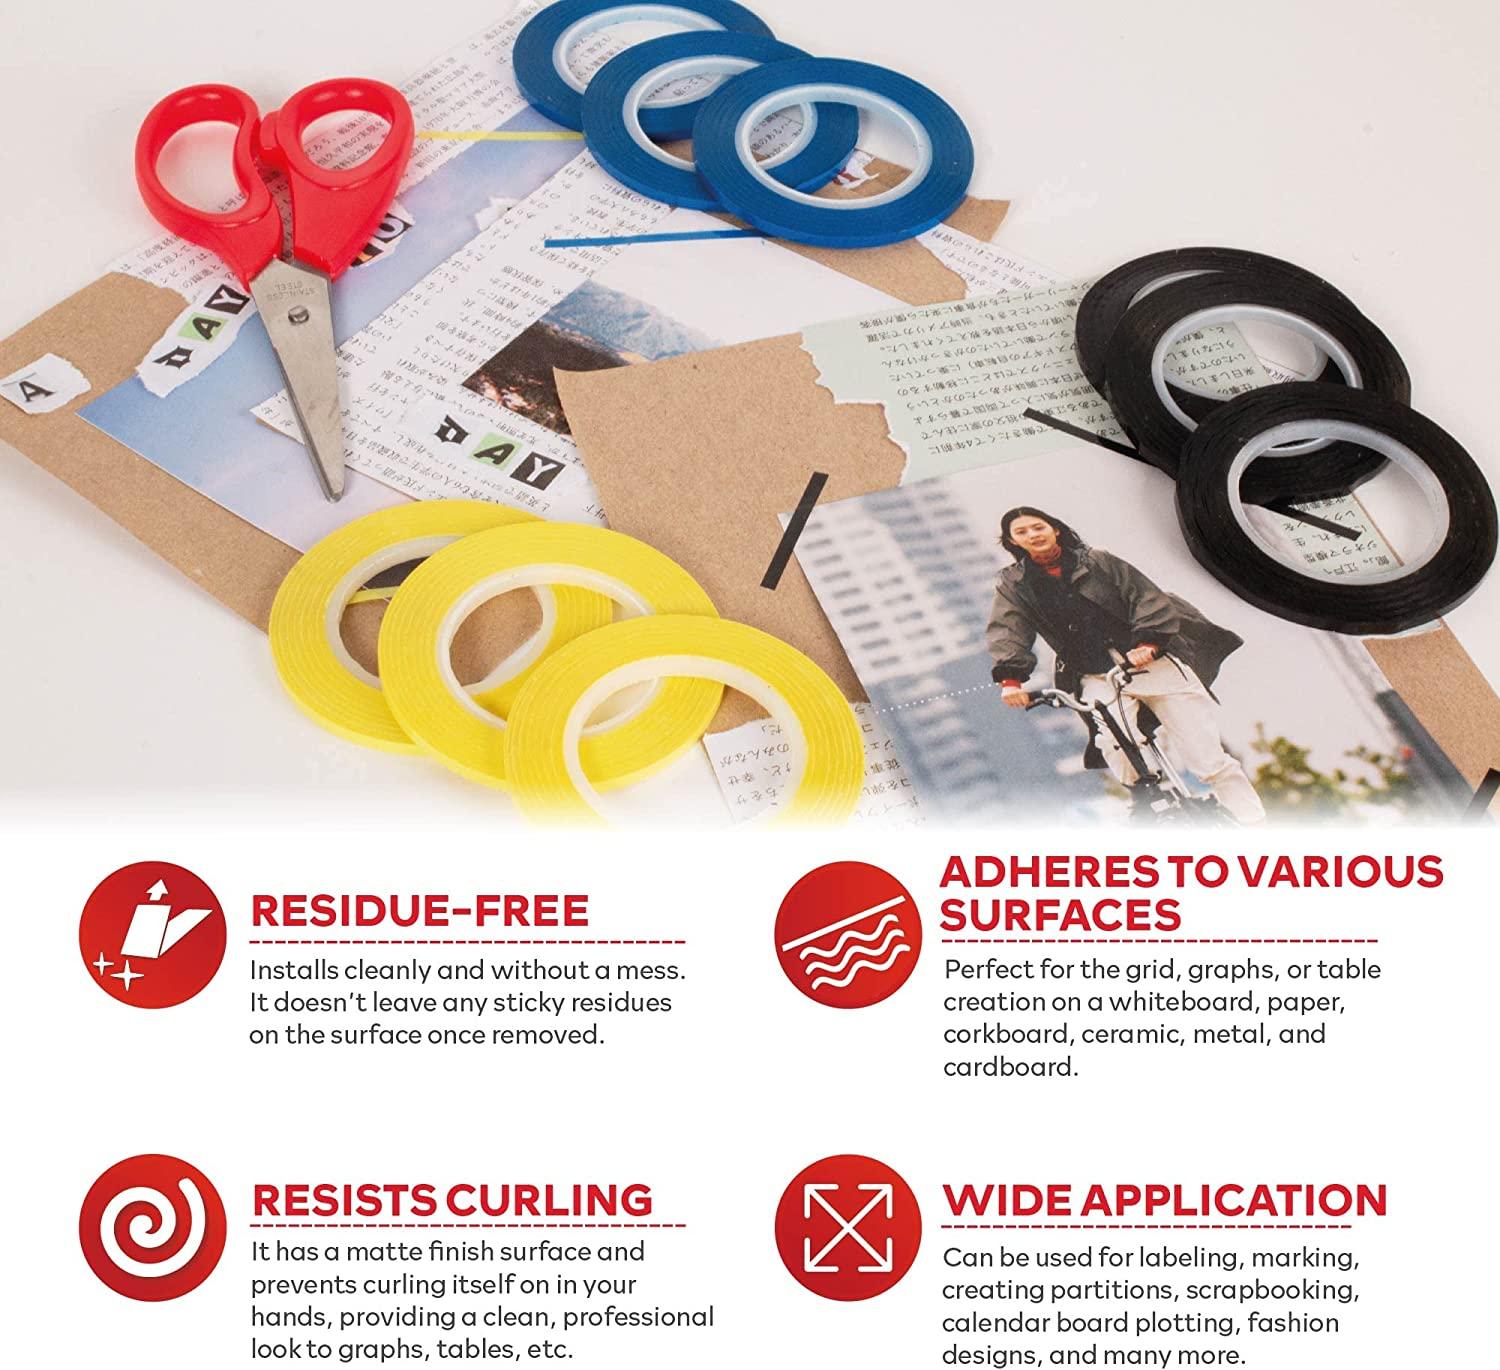 XFasten Premium Office and School Scissors, 8 Inches, Multicolor